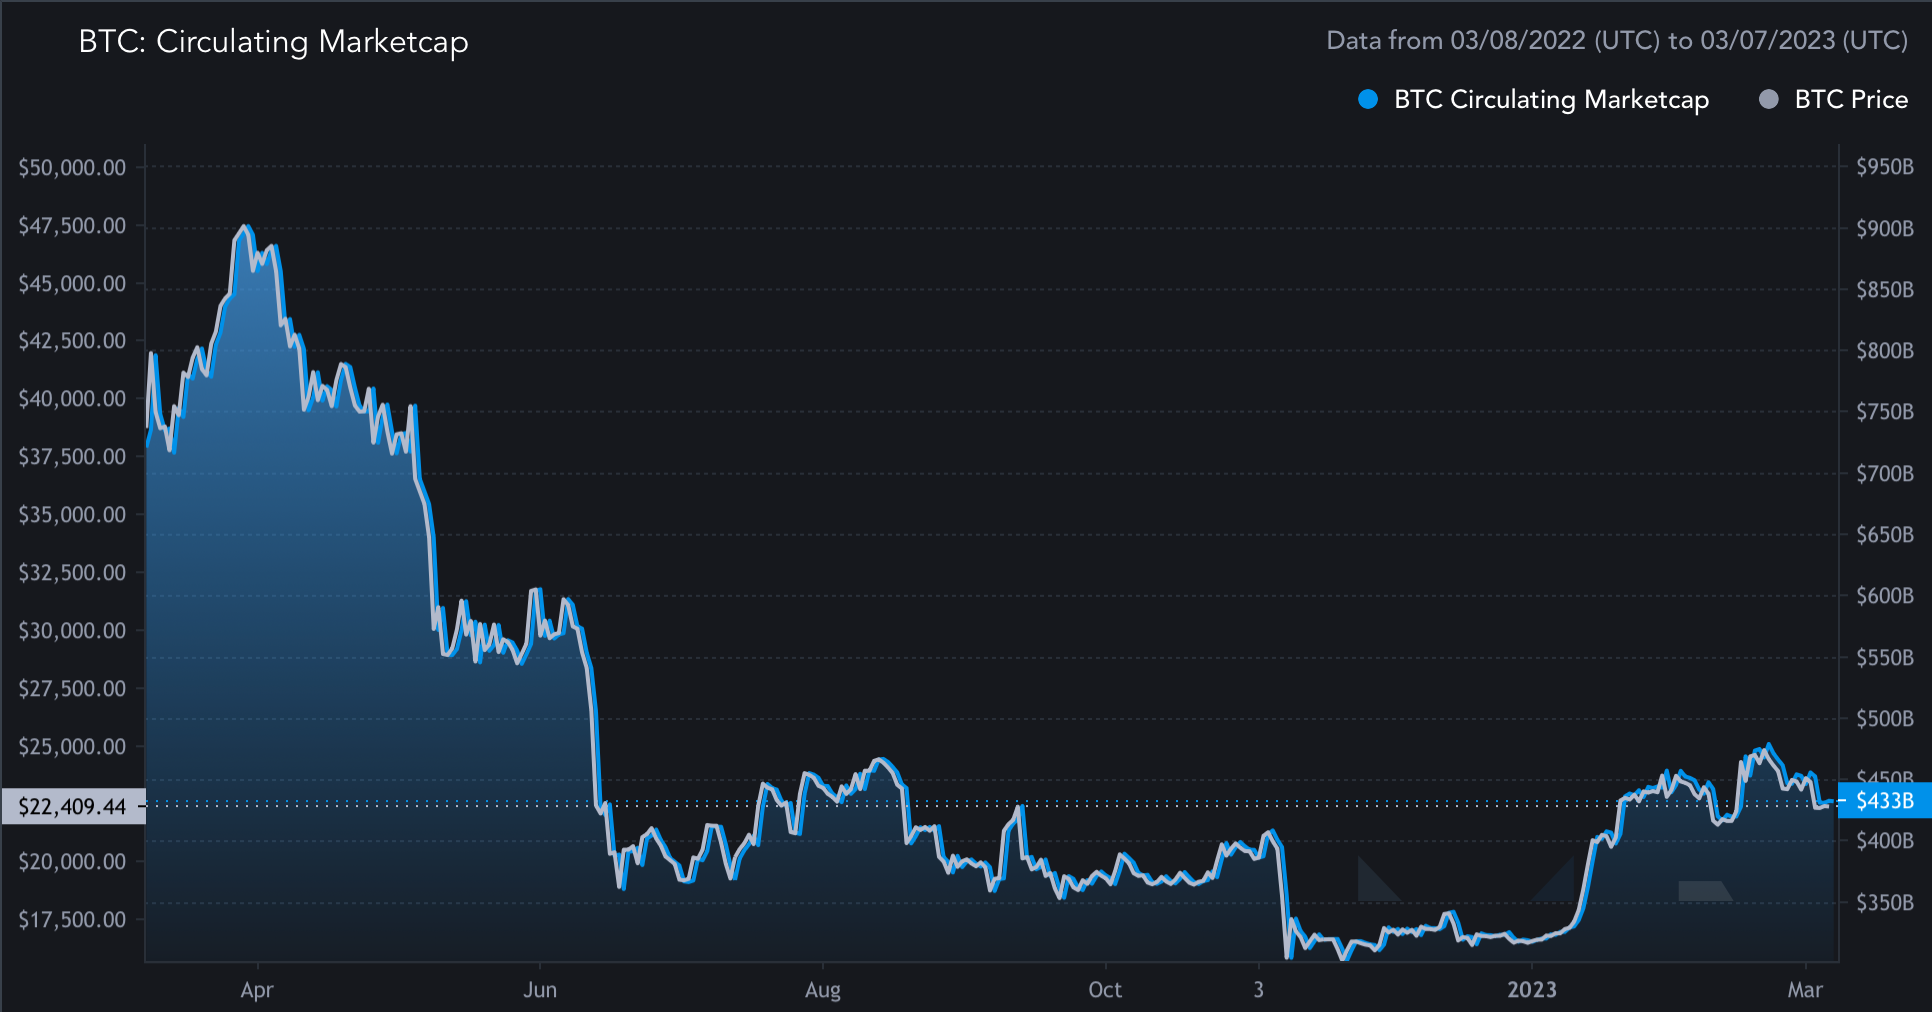 Verlauf der Bitcoin (BTC) Marktkapitalisierung im 1-Jahres-Intervall (Stand: 30.10.22)